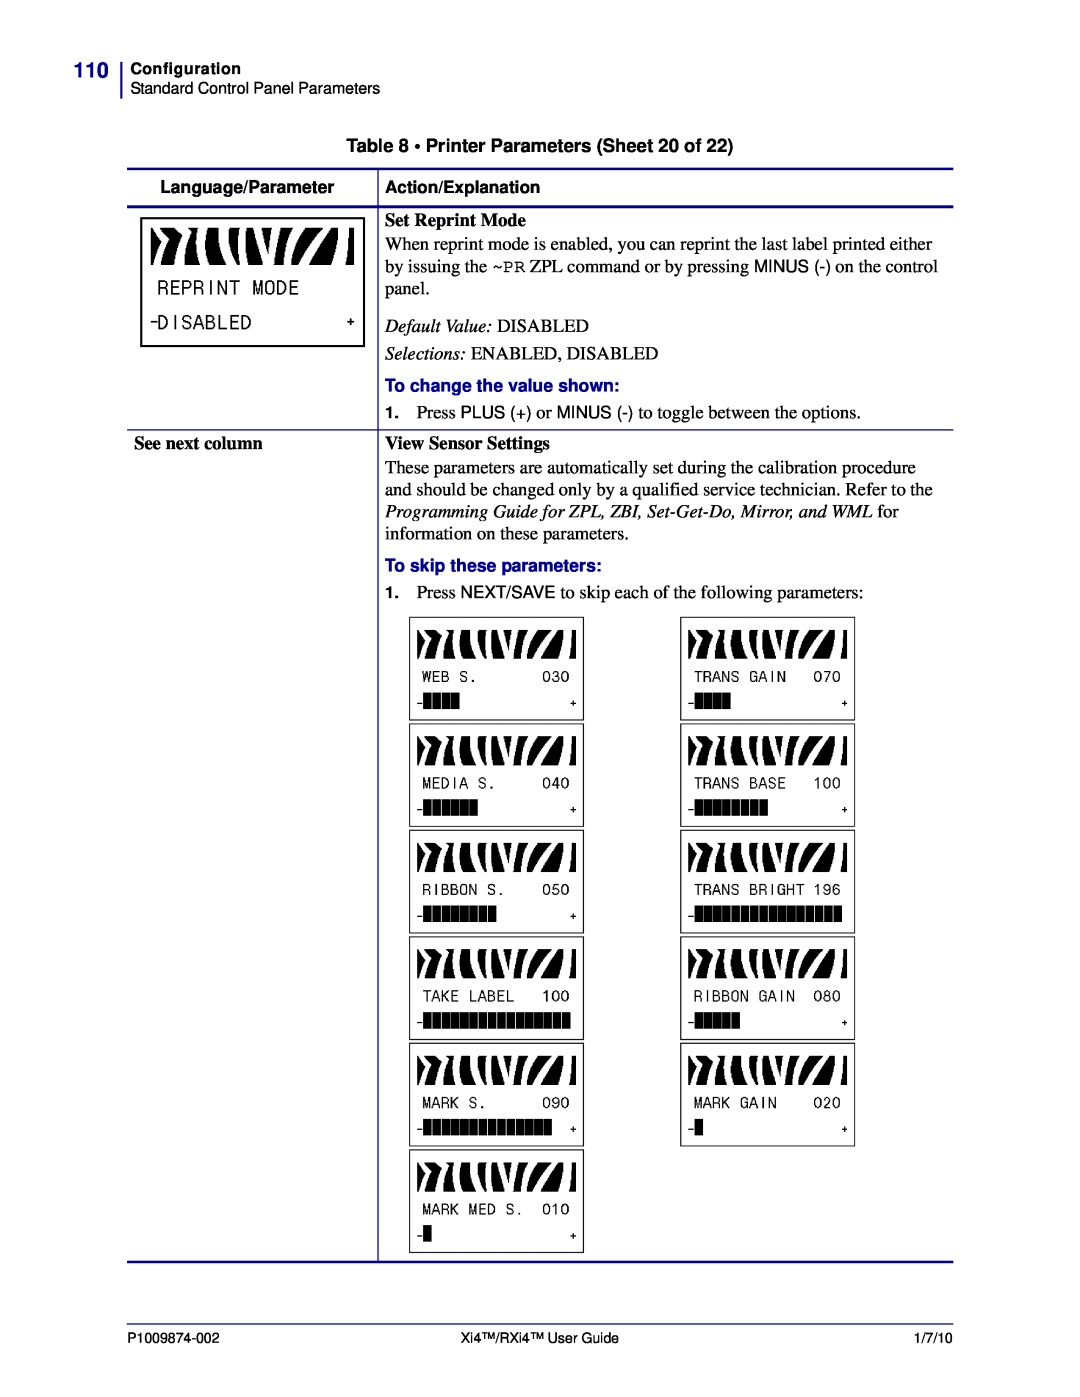 Zebra Technologies 17080100000 Printer Parameters Sheet 20 of, Set Reprint Mode, Default Value DISABLED, See next column 